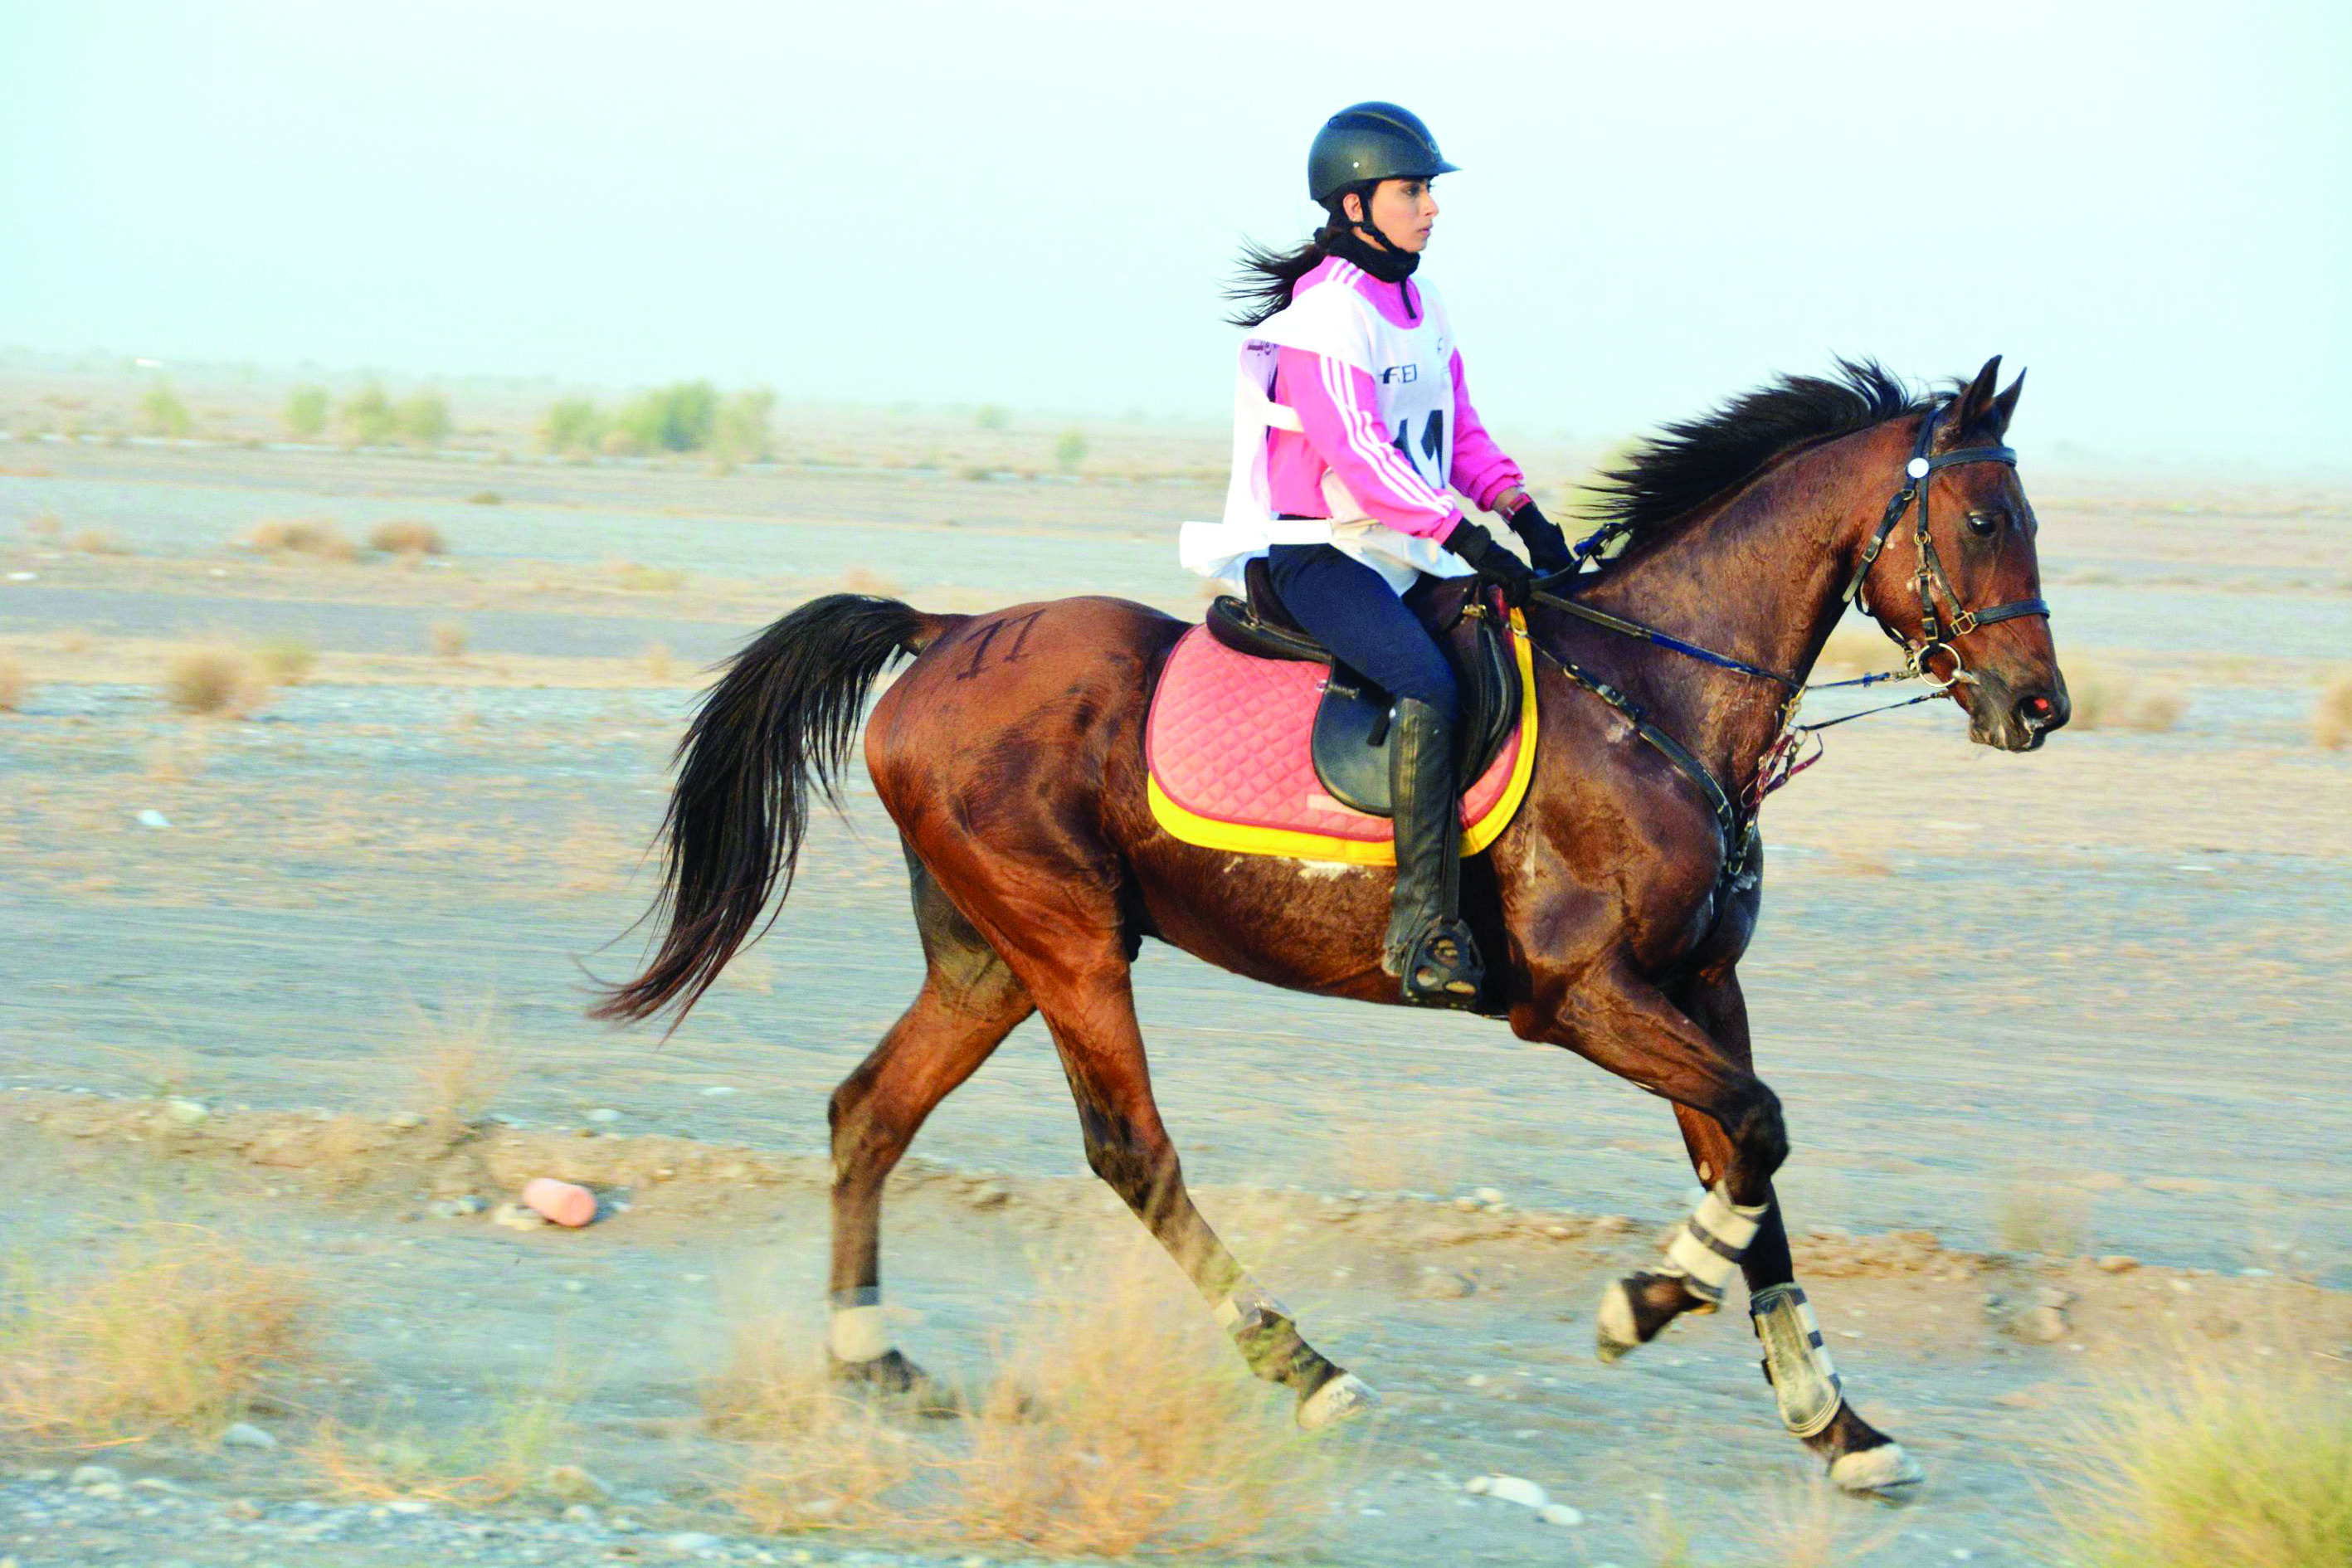 في مسابقة الفتيات للقدرة والتحمل 

اتحاد الفروسية يرصد 14 ألف ريال عماني للفائزات